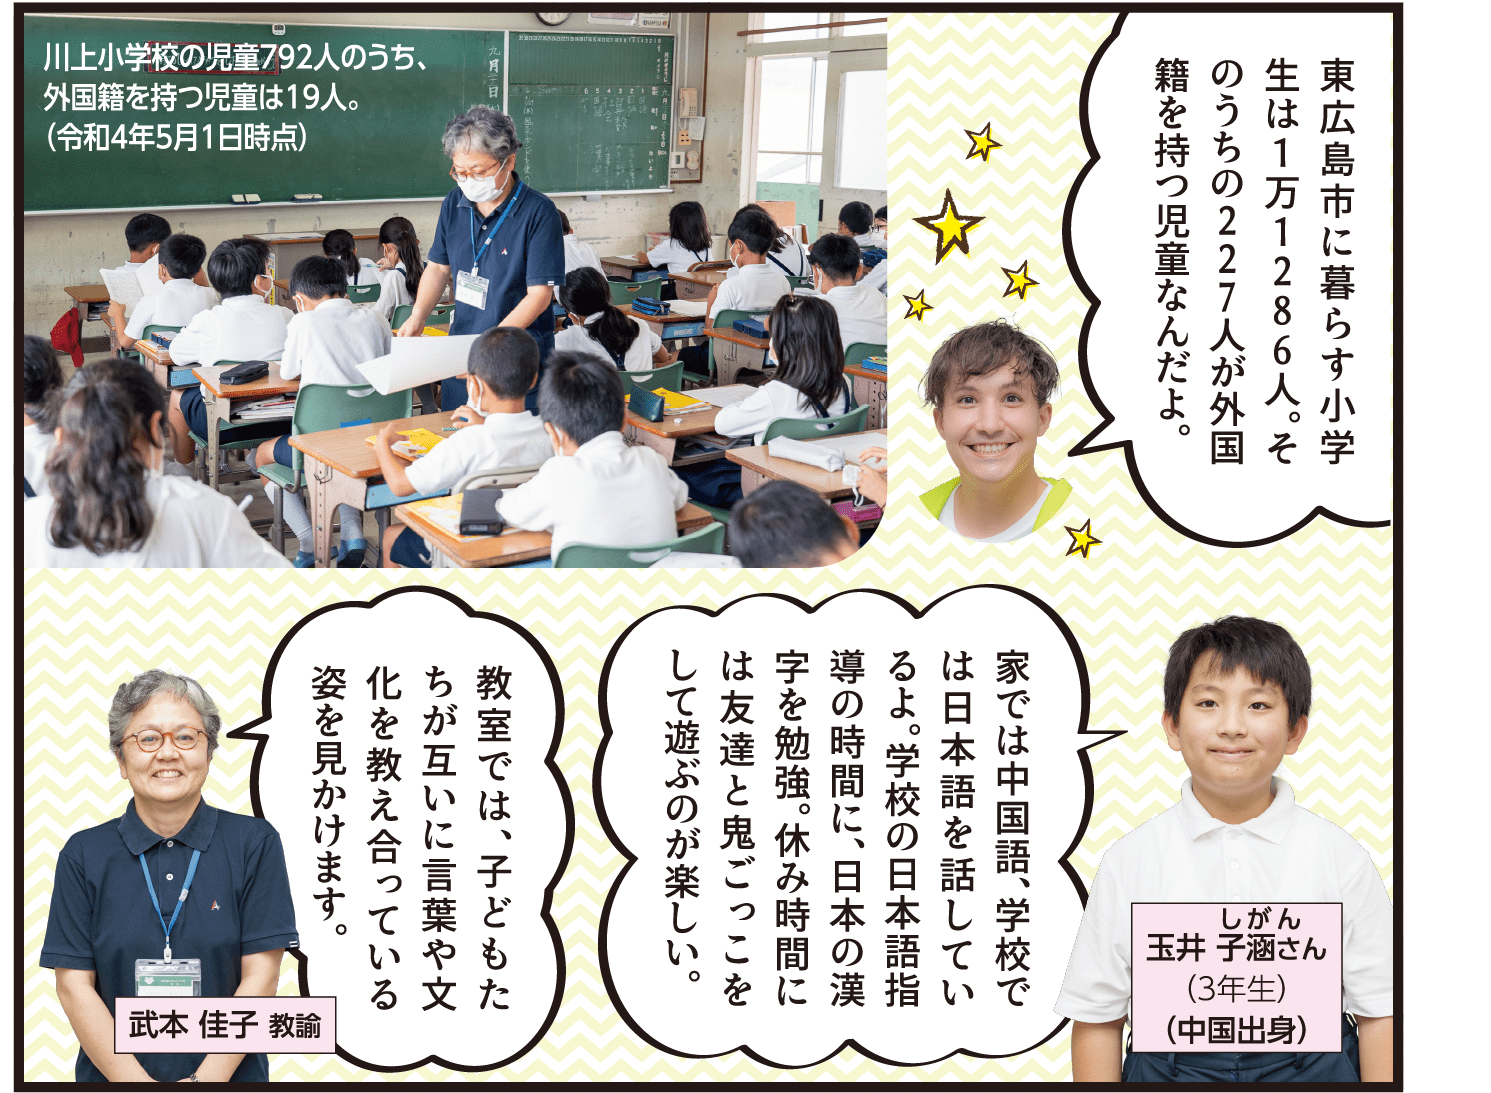 東広島市に暮らす小学生は１万1286人。そのうちの227人が外国籍を持つ児童なんだよ。家では中国語、学校では日本語を話しているよ。学校の日本語指導の時間に、日本の漢字を勉強。休み時間には友達と鬼ごっこをして遊ぶのが楽しい。教室では、子どもたちが互いに言葉や文化を教え合っている姿を見かけます。